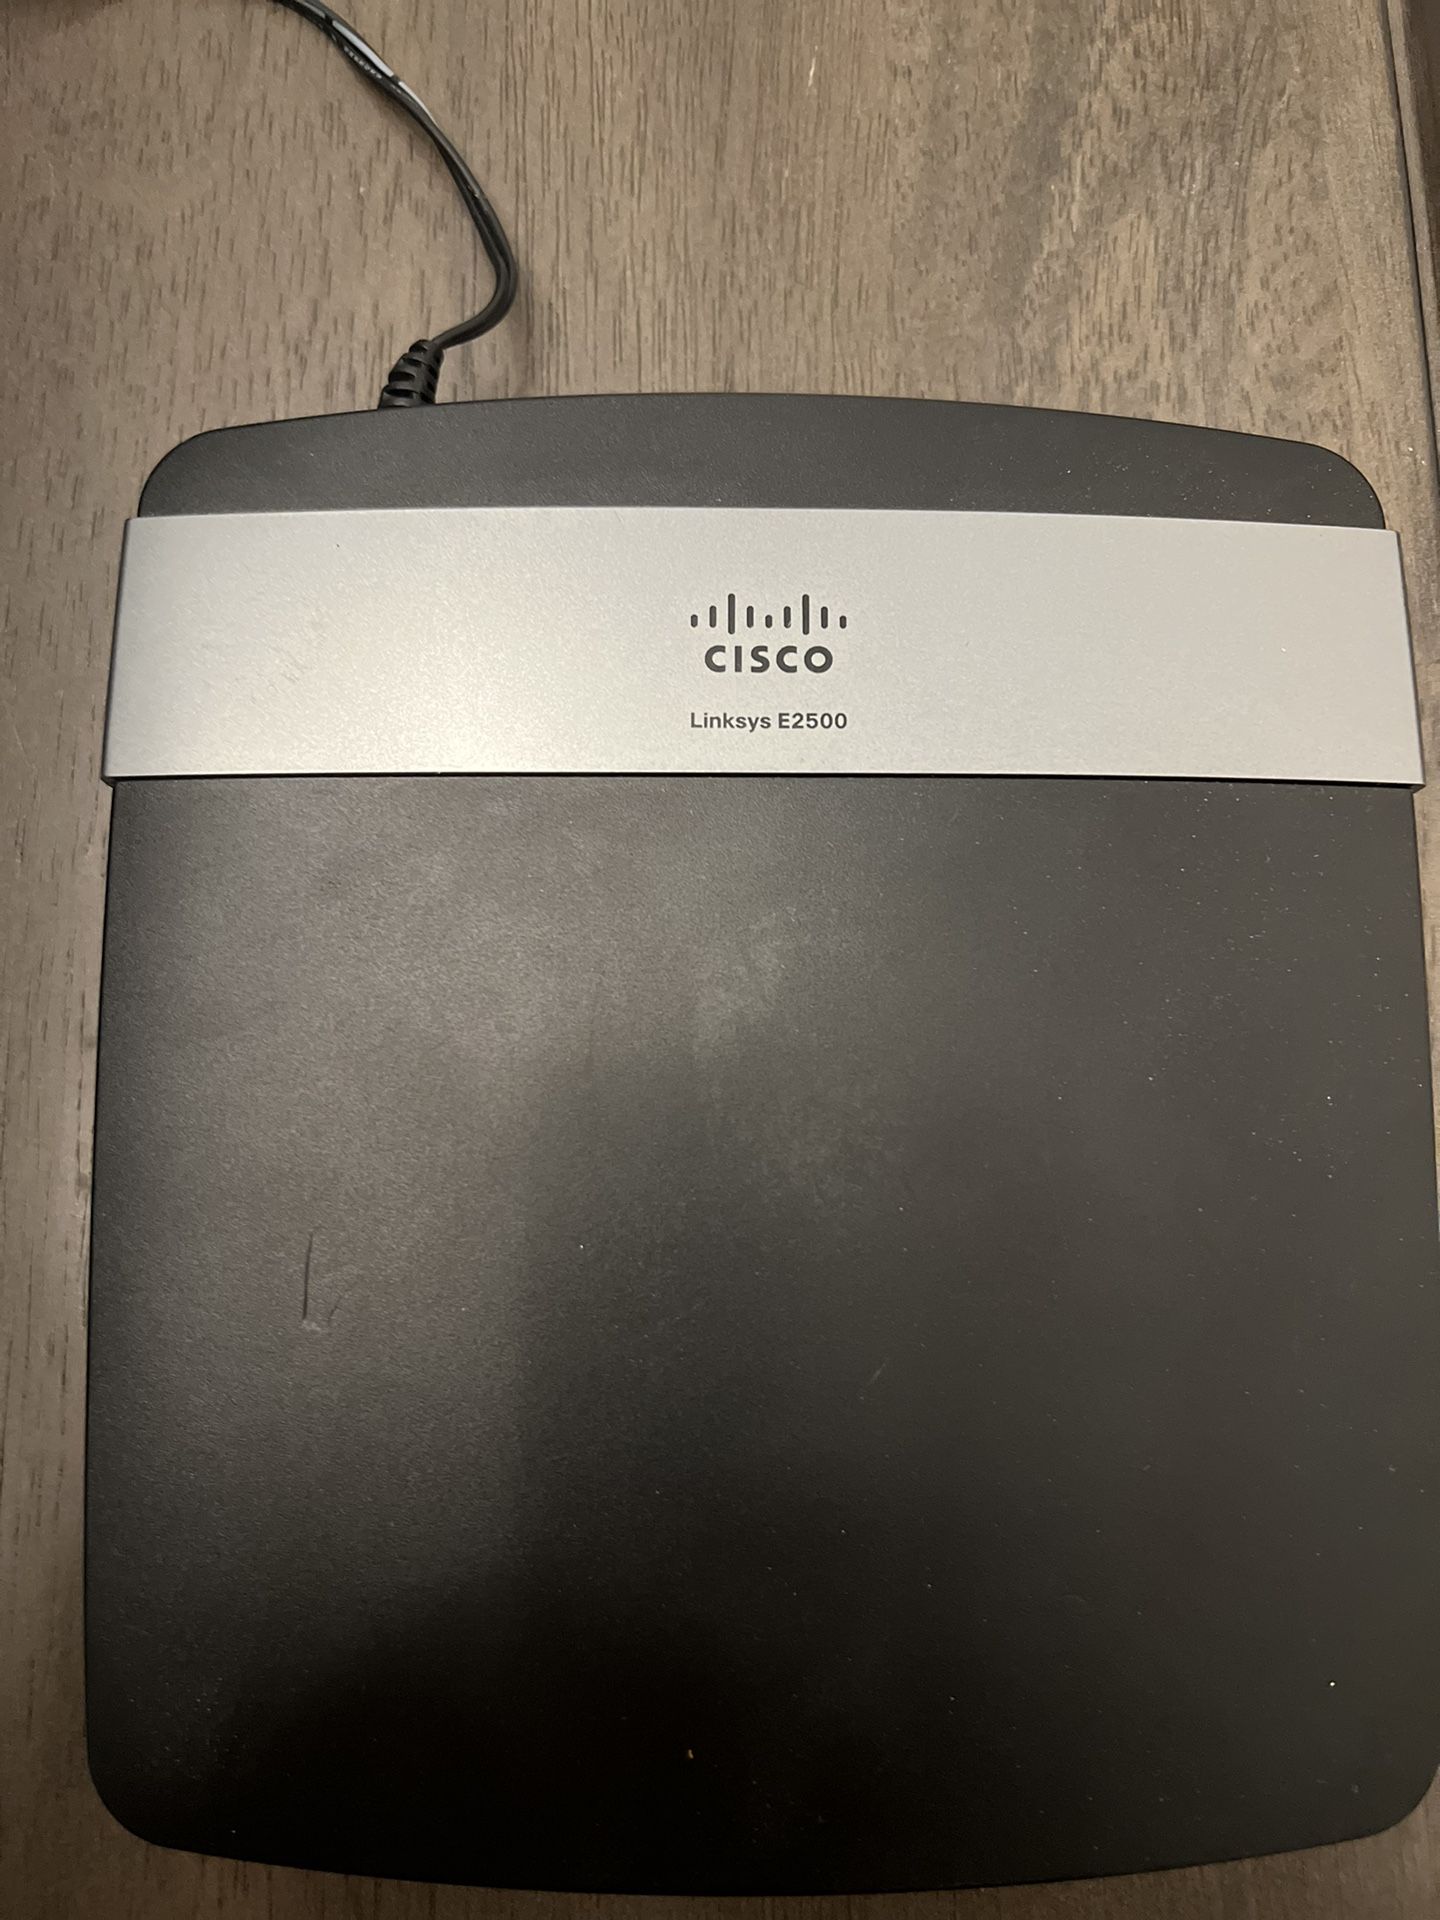 Cisco E2500 Wifi Router